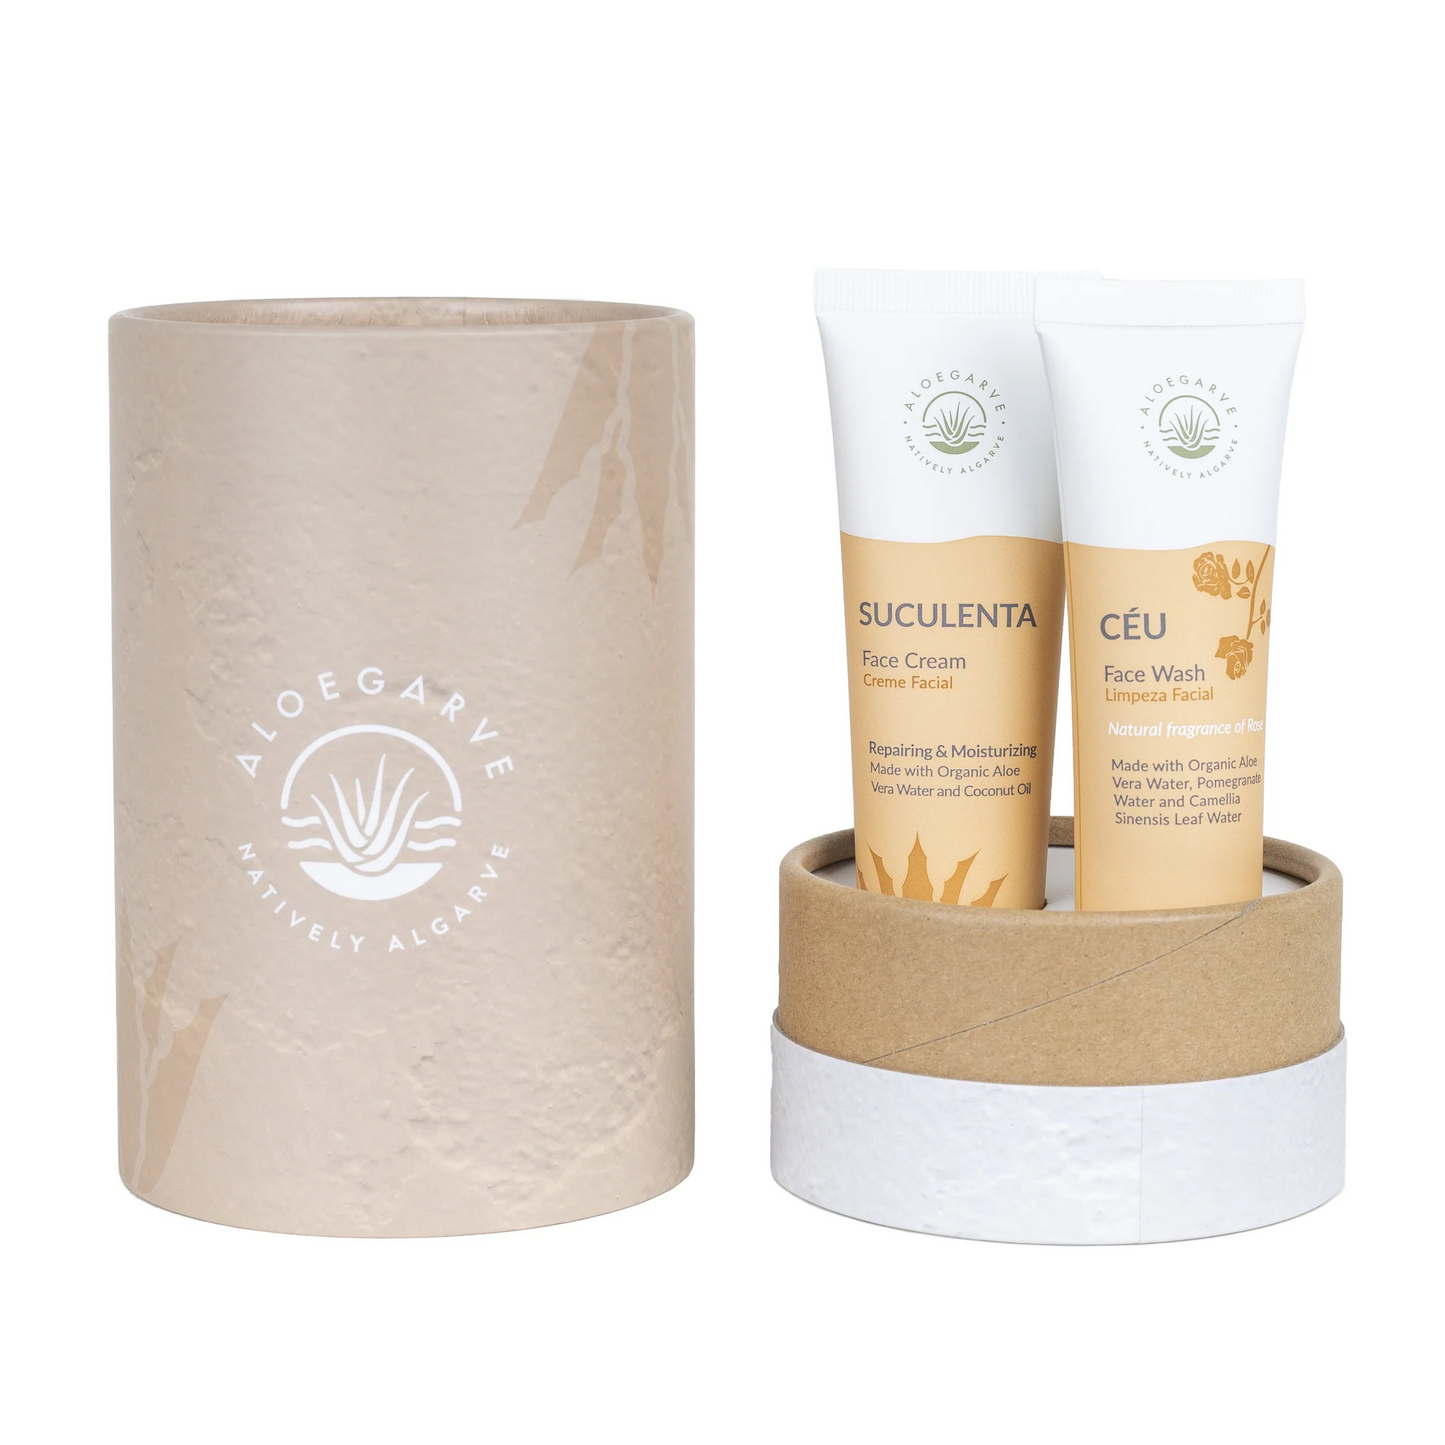 Pack de Oferta: Skin Rejoice Treatment Face Wash "Céu" 50ml
Perfection Impurities Cream "Suculenta" 50ml